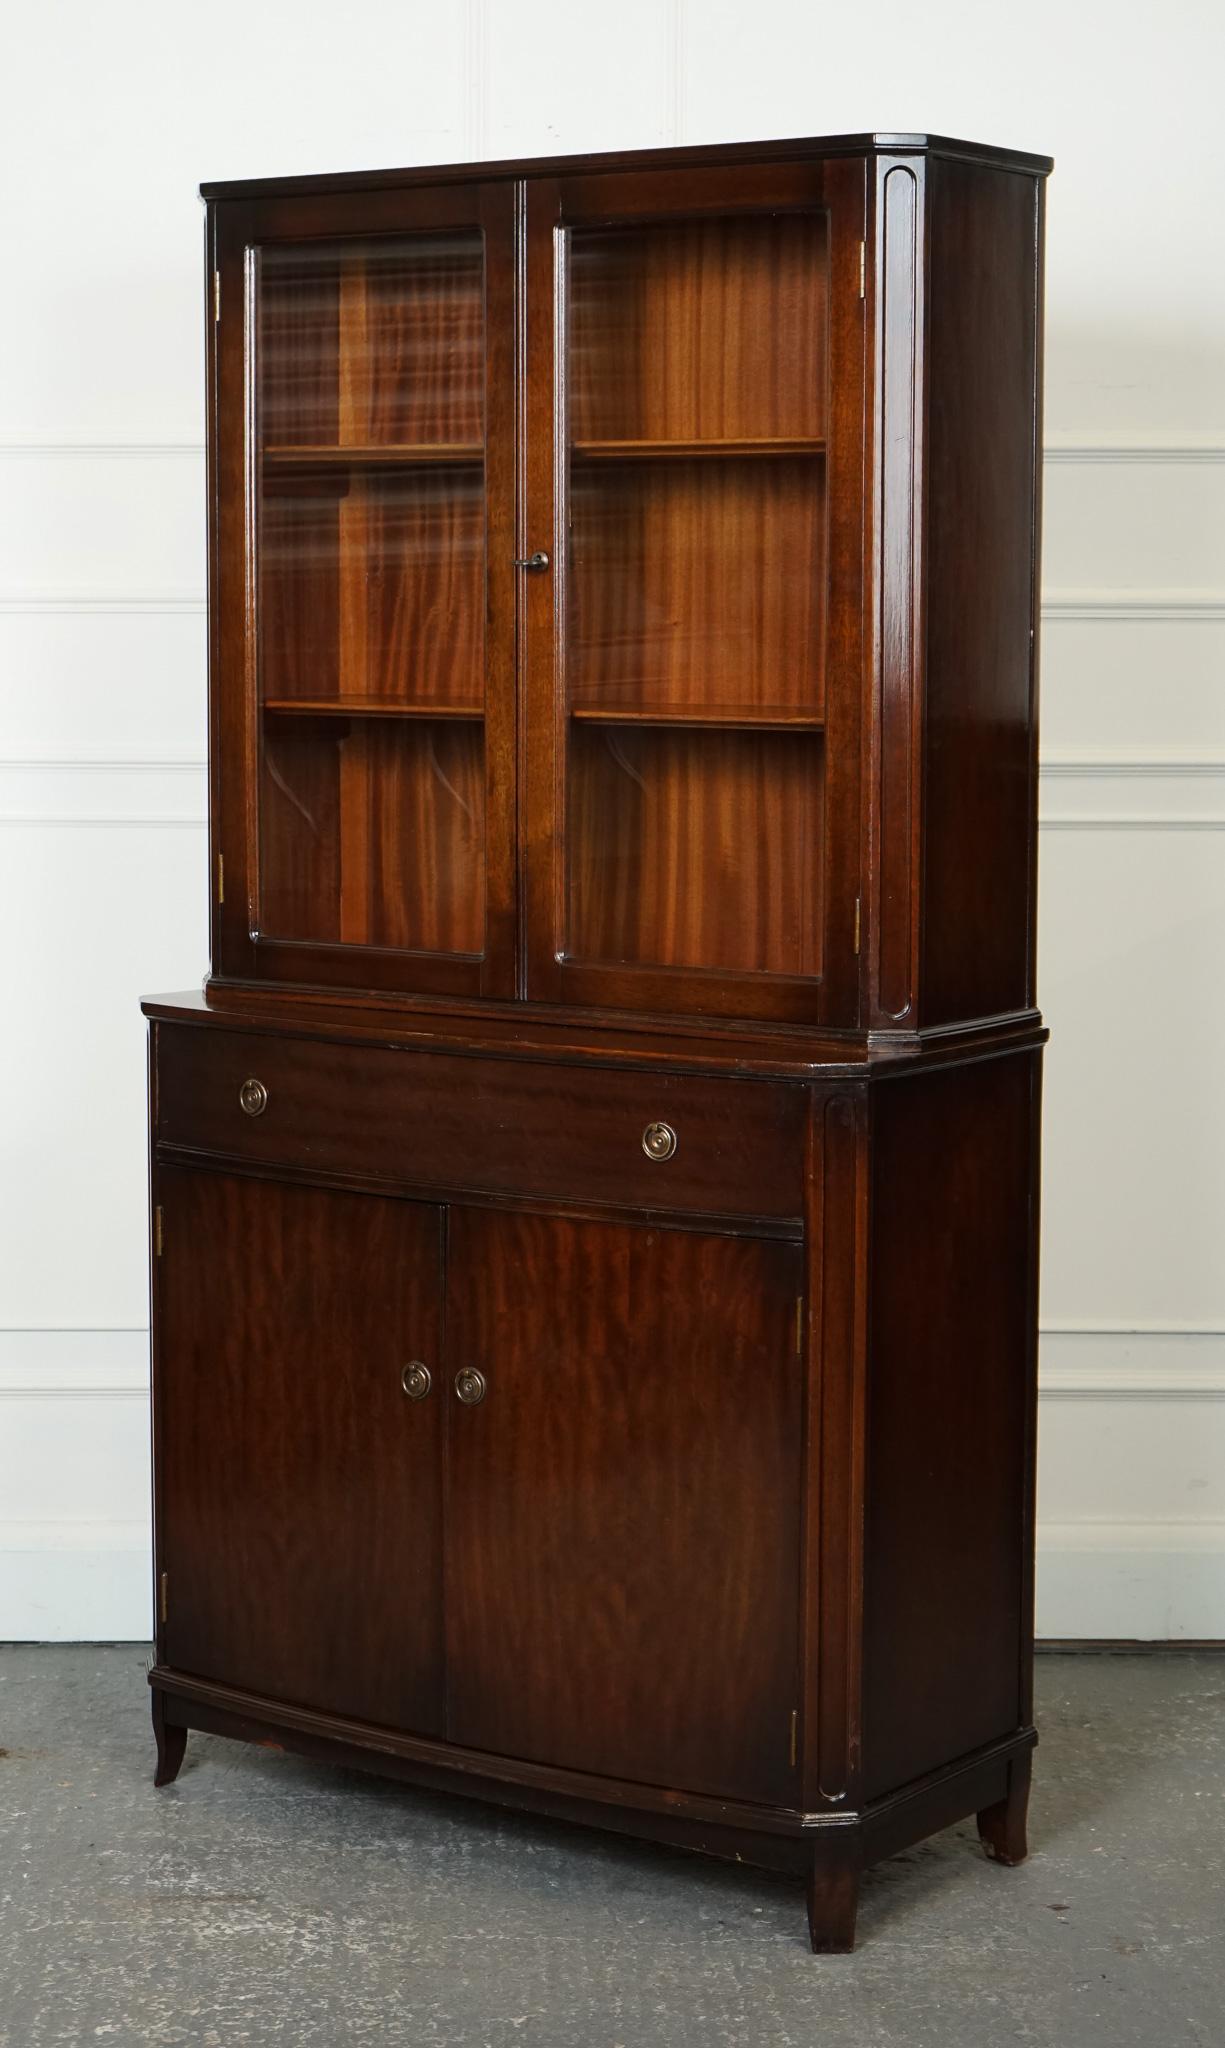 

Wir freuen uns, dieses Regency Style Hardwood Bookcase Cabinet mit verglasten Türen zum Verkauf anzubieten.

Dieses Bücherregal ist kompakt und passt perfekt in kleinere Wohnungen.

Ein Bücherschrank aus Hartholz mit verglasten Türen im